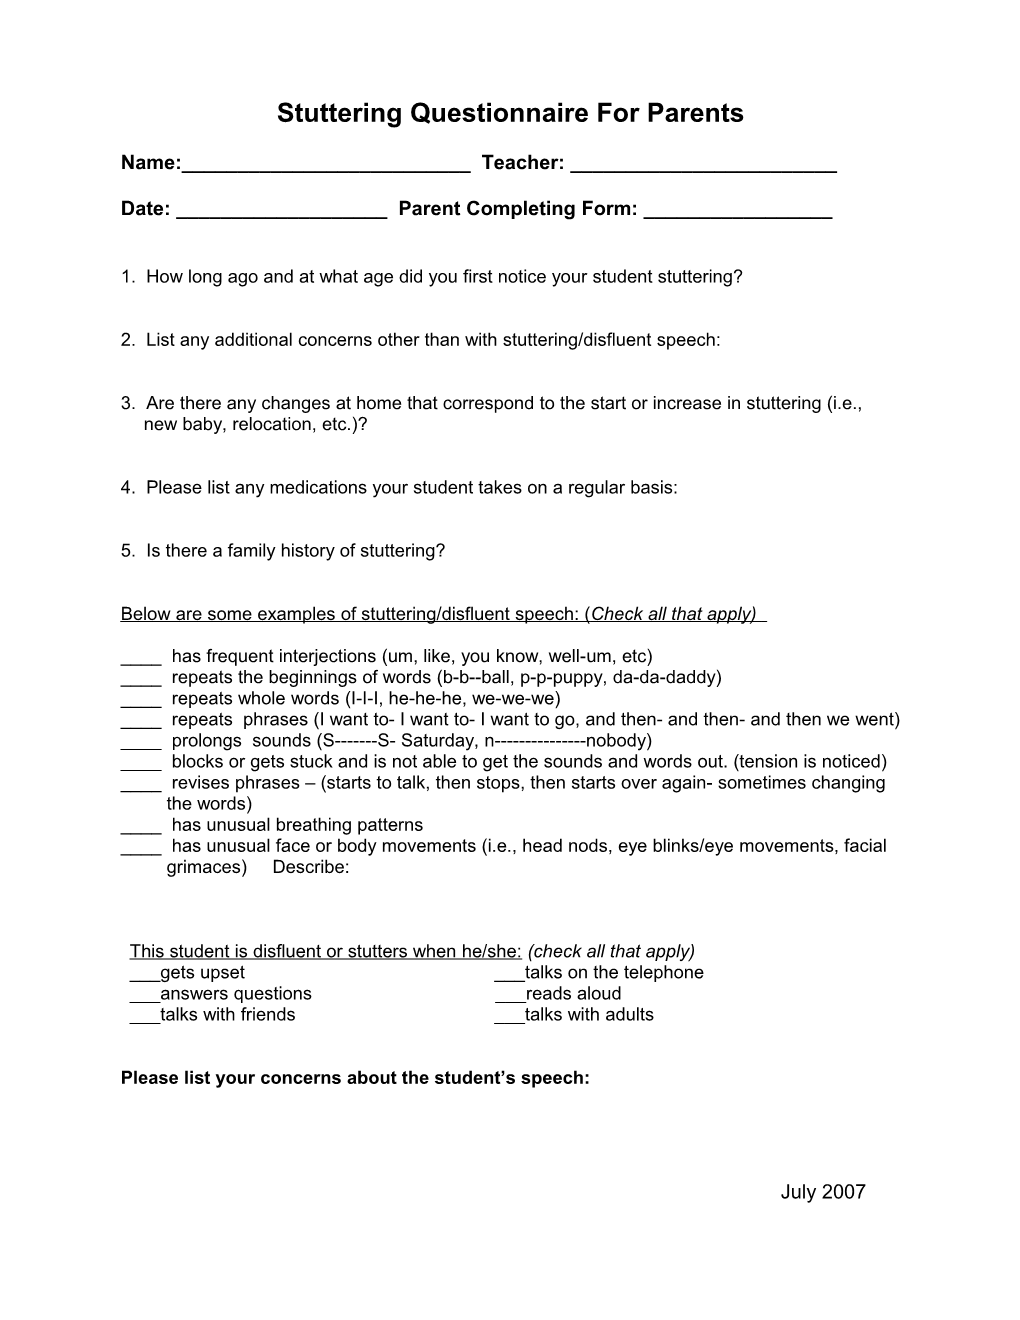 Stuttering Questionnaire for Parents